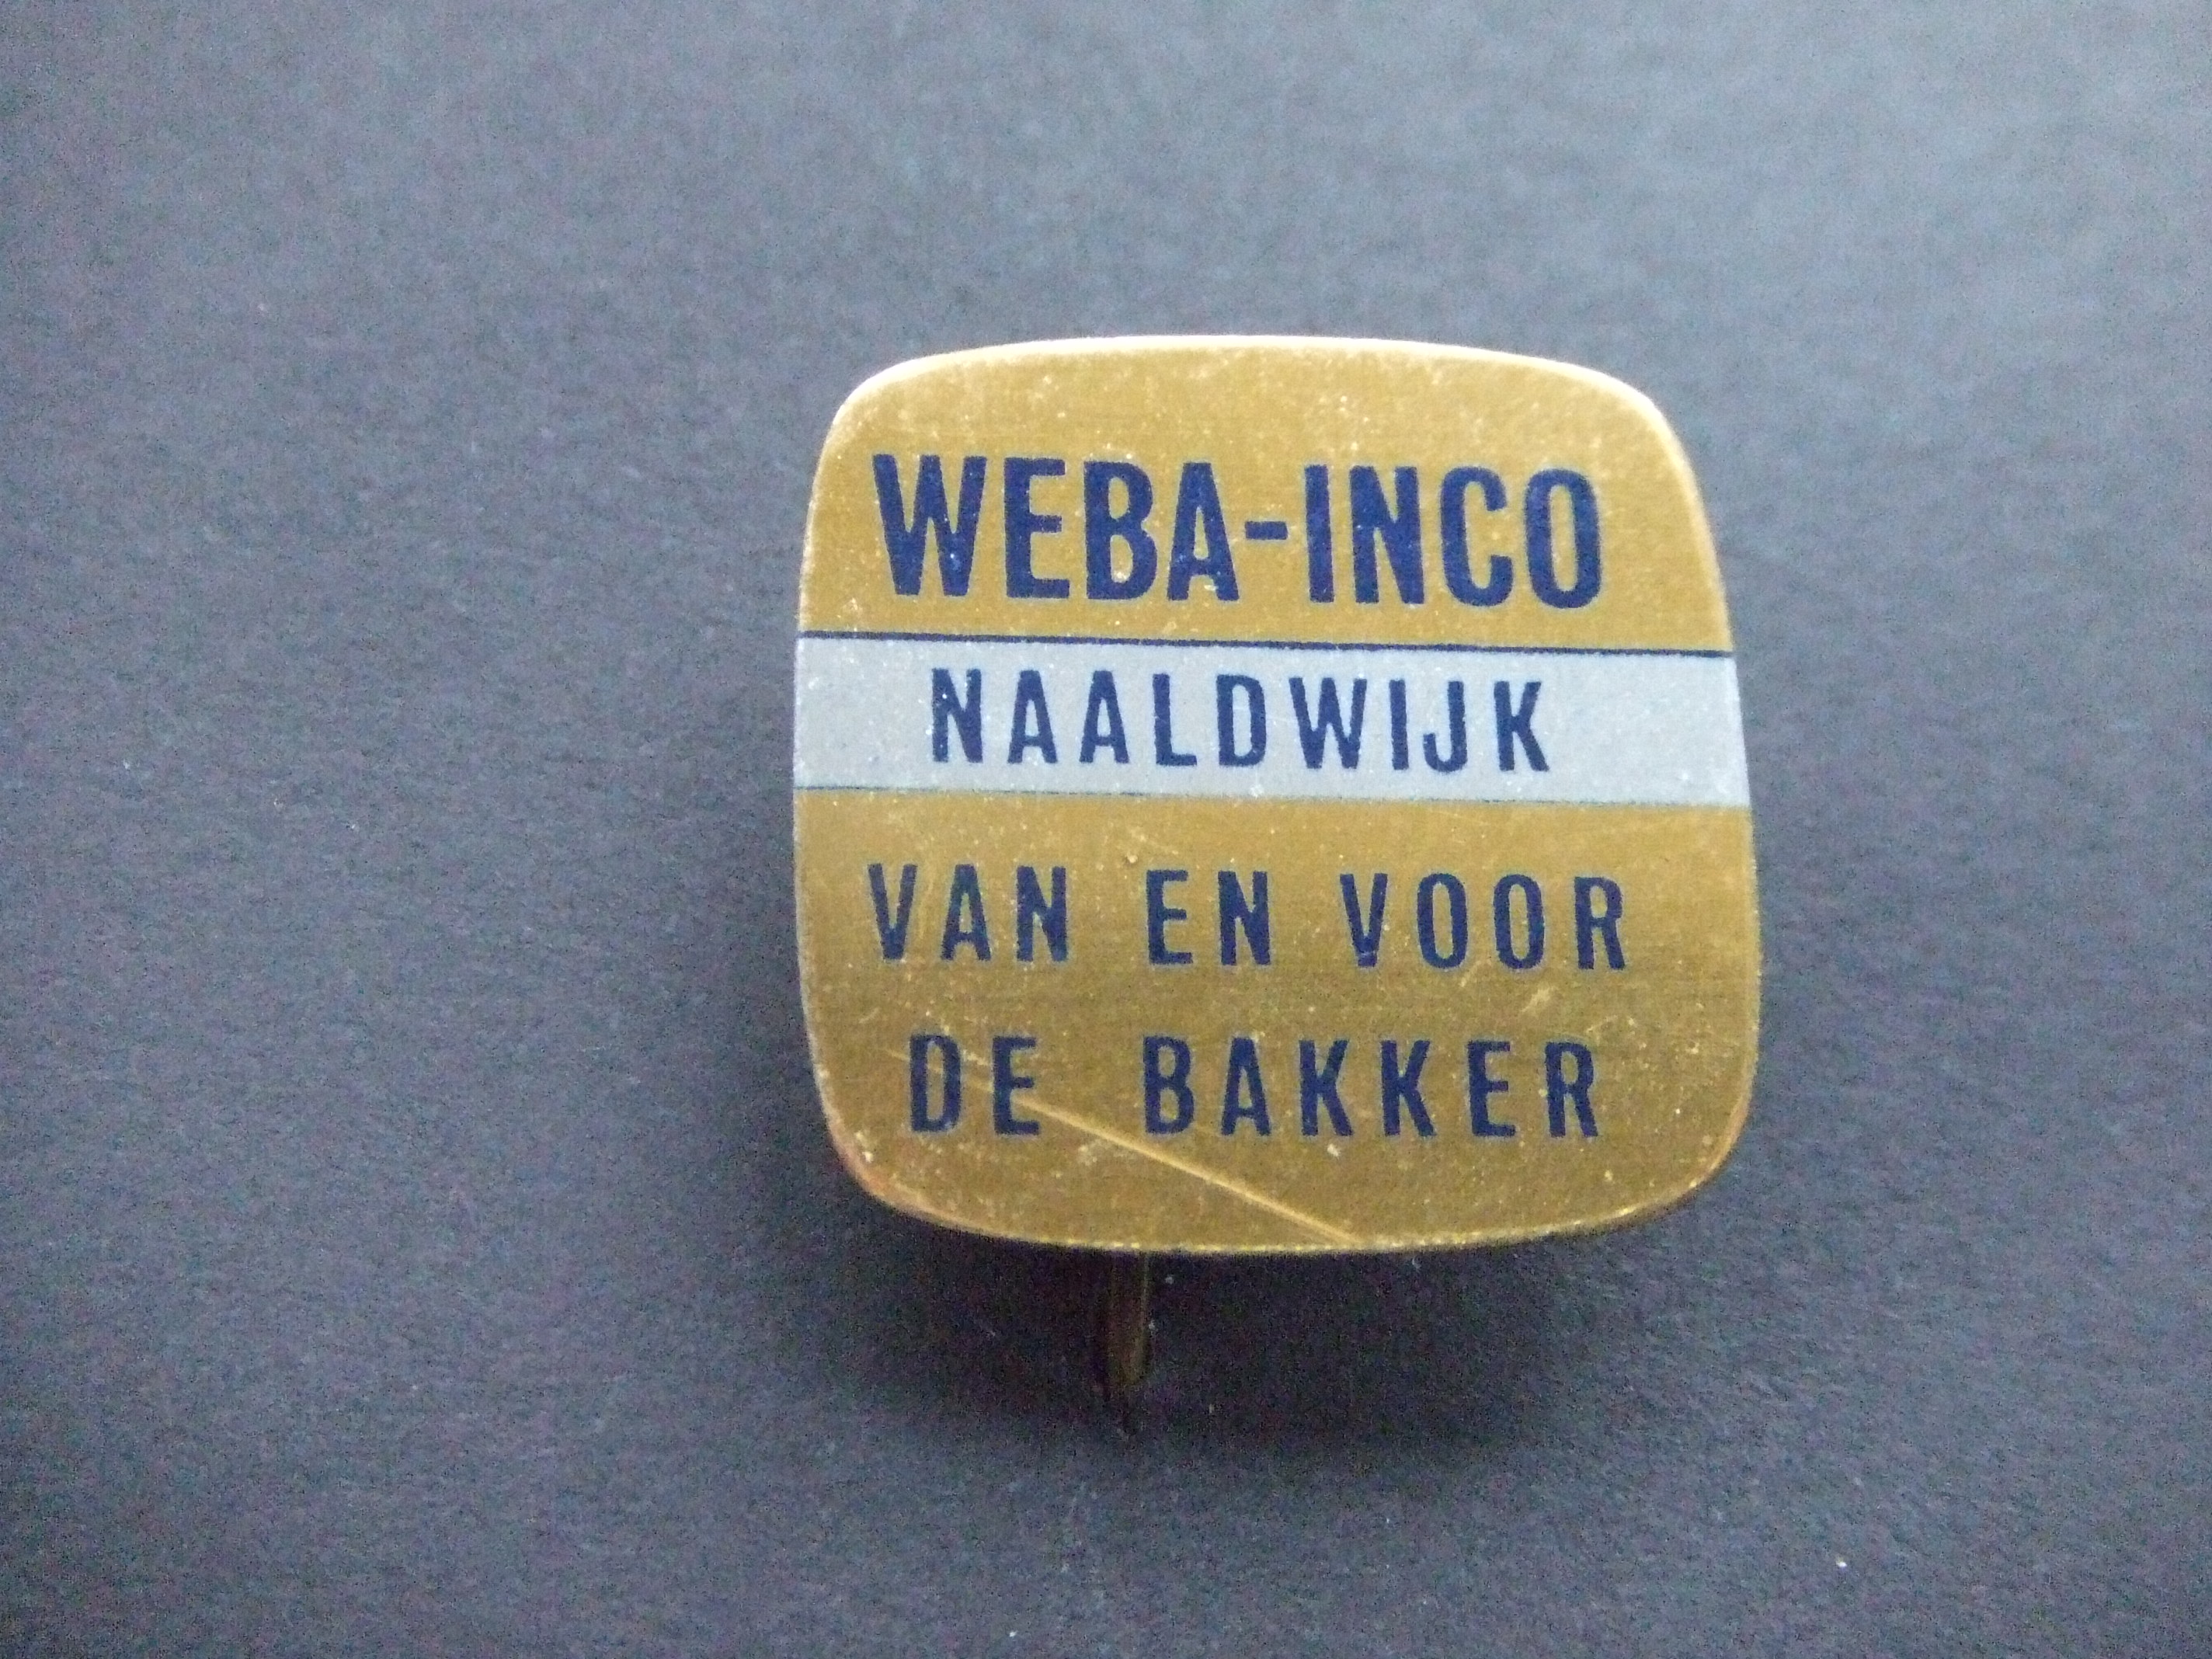 Weba-Inco.inkooporganisatie voor bakkerijgrondstoffen Naaldwijk Westland